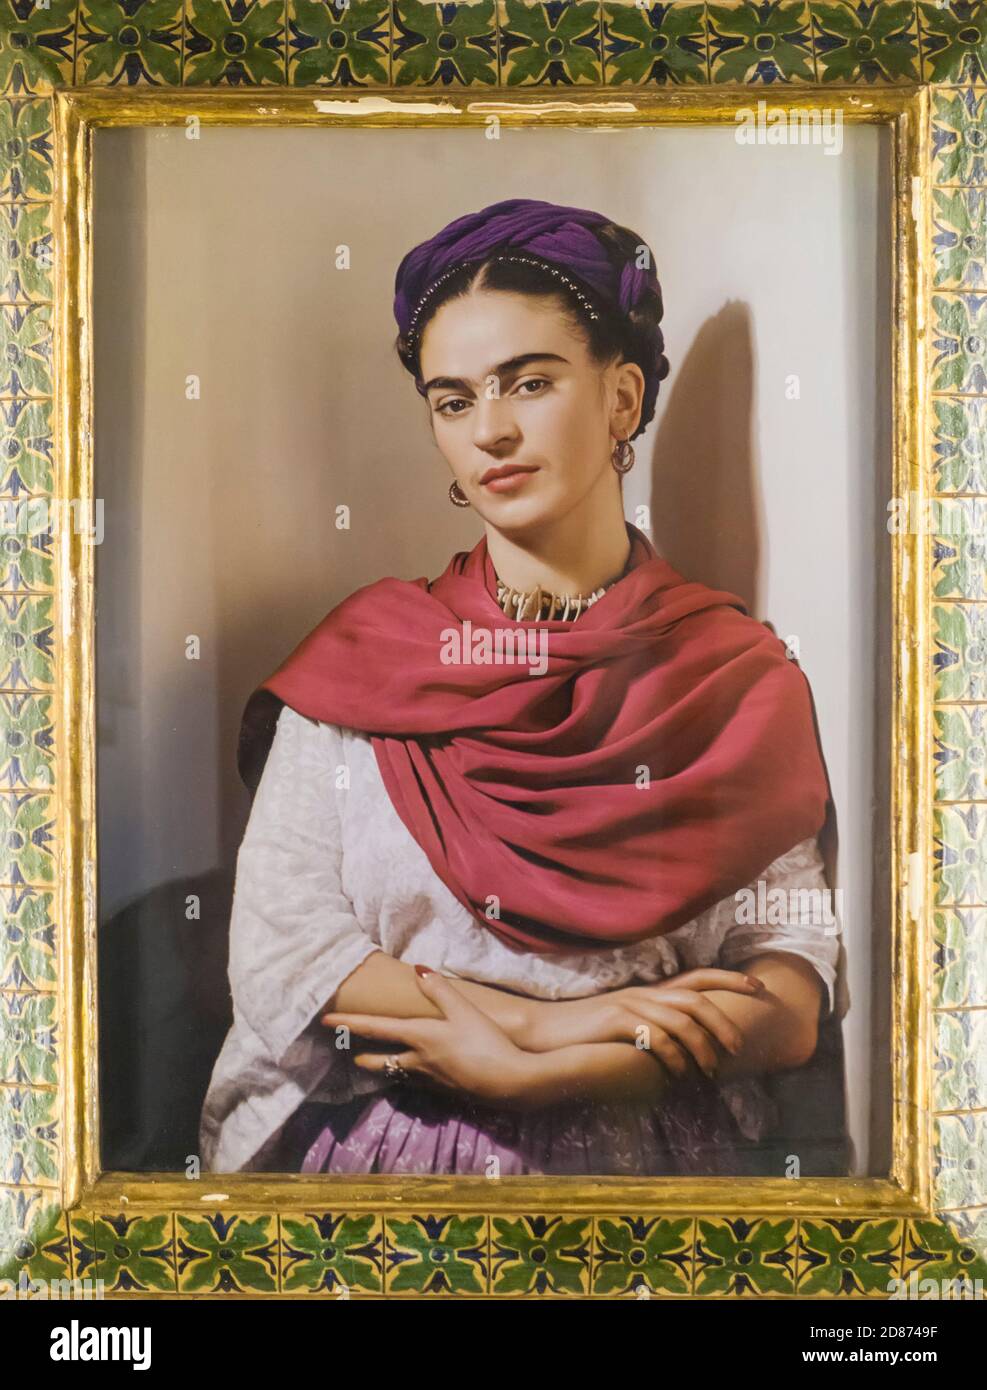 L'iconica fotografia di Nicolas Muray dell'artista messicano Frida Kahlo in mostra alla Casa Azul (Casa Blu) Coyoacan, Città del Messico, Messico Foto Stock